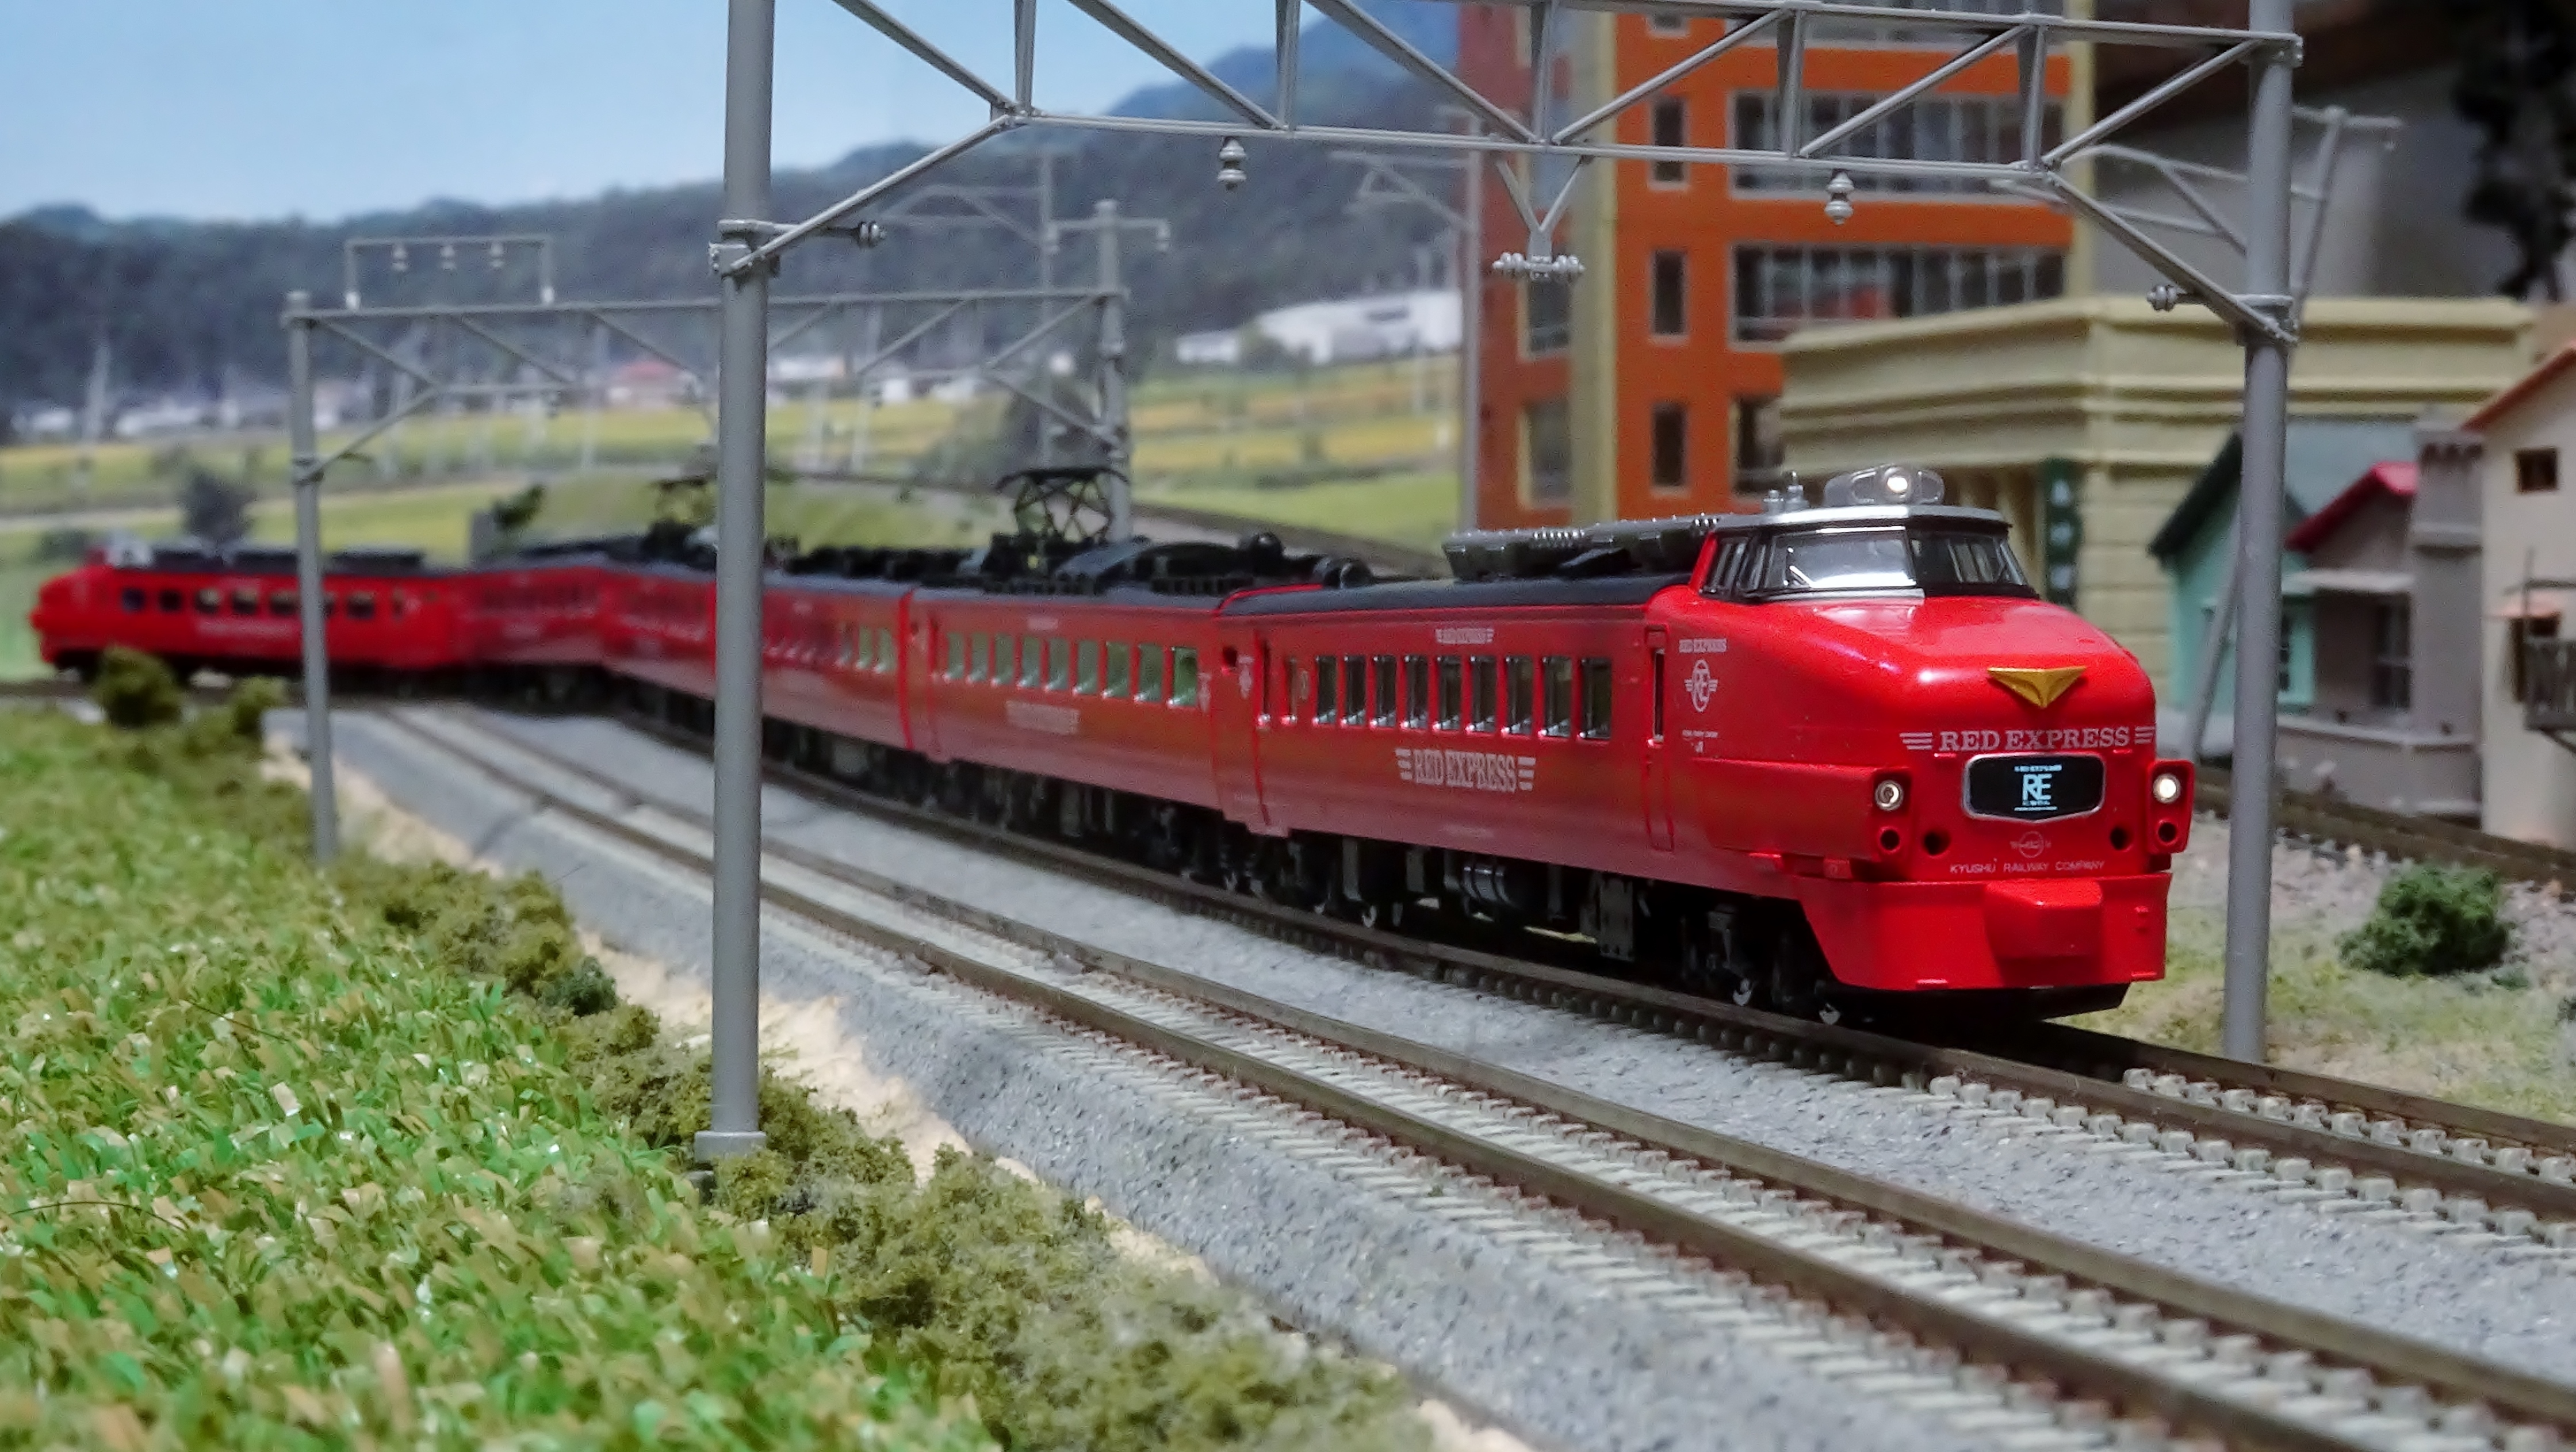 JR 485系特急電車(クロ481-100・RED EXPRESS)セット